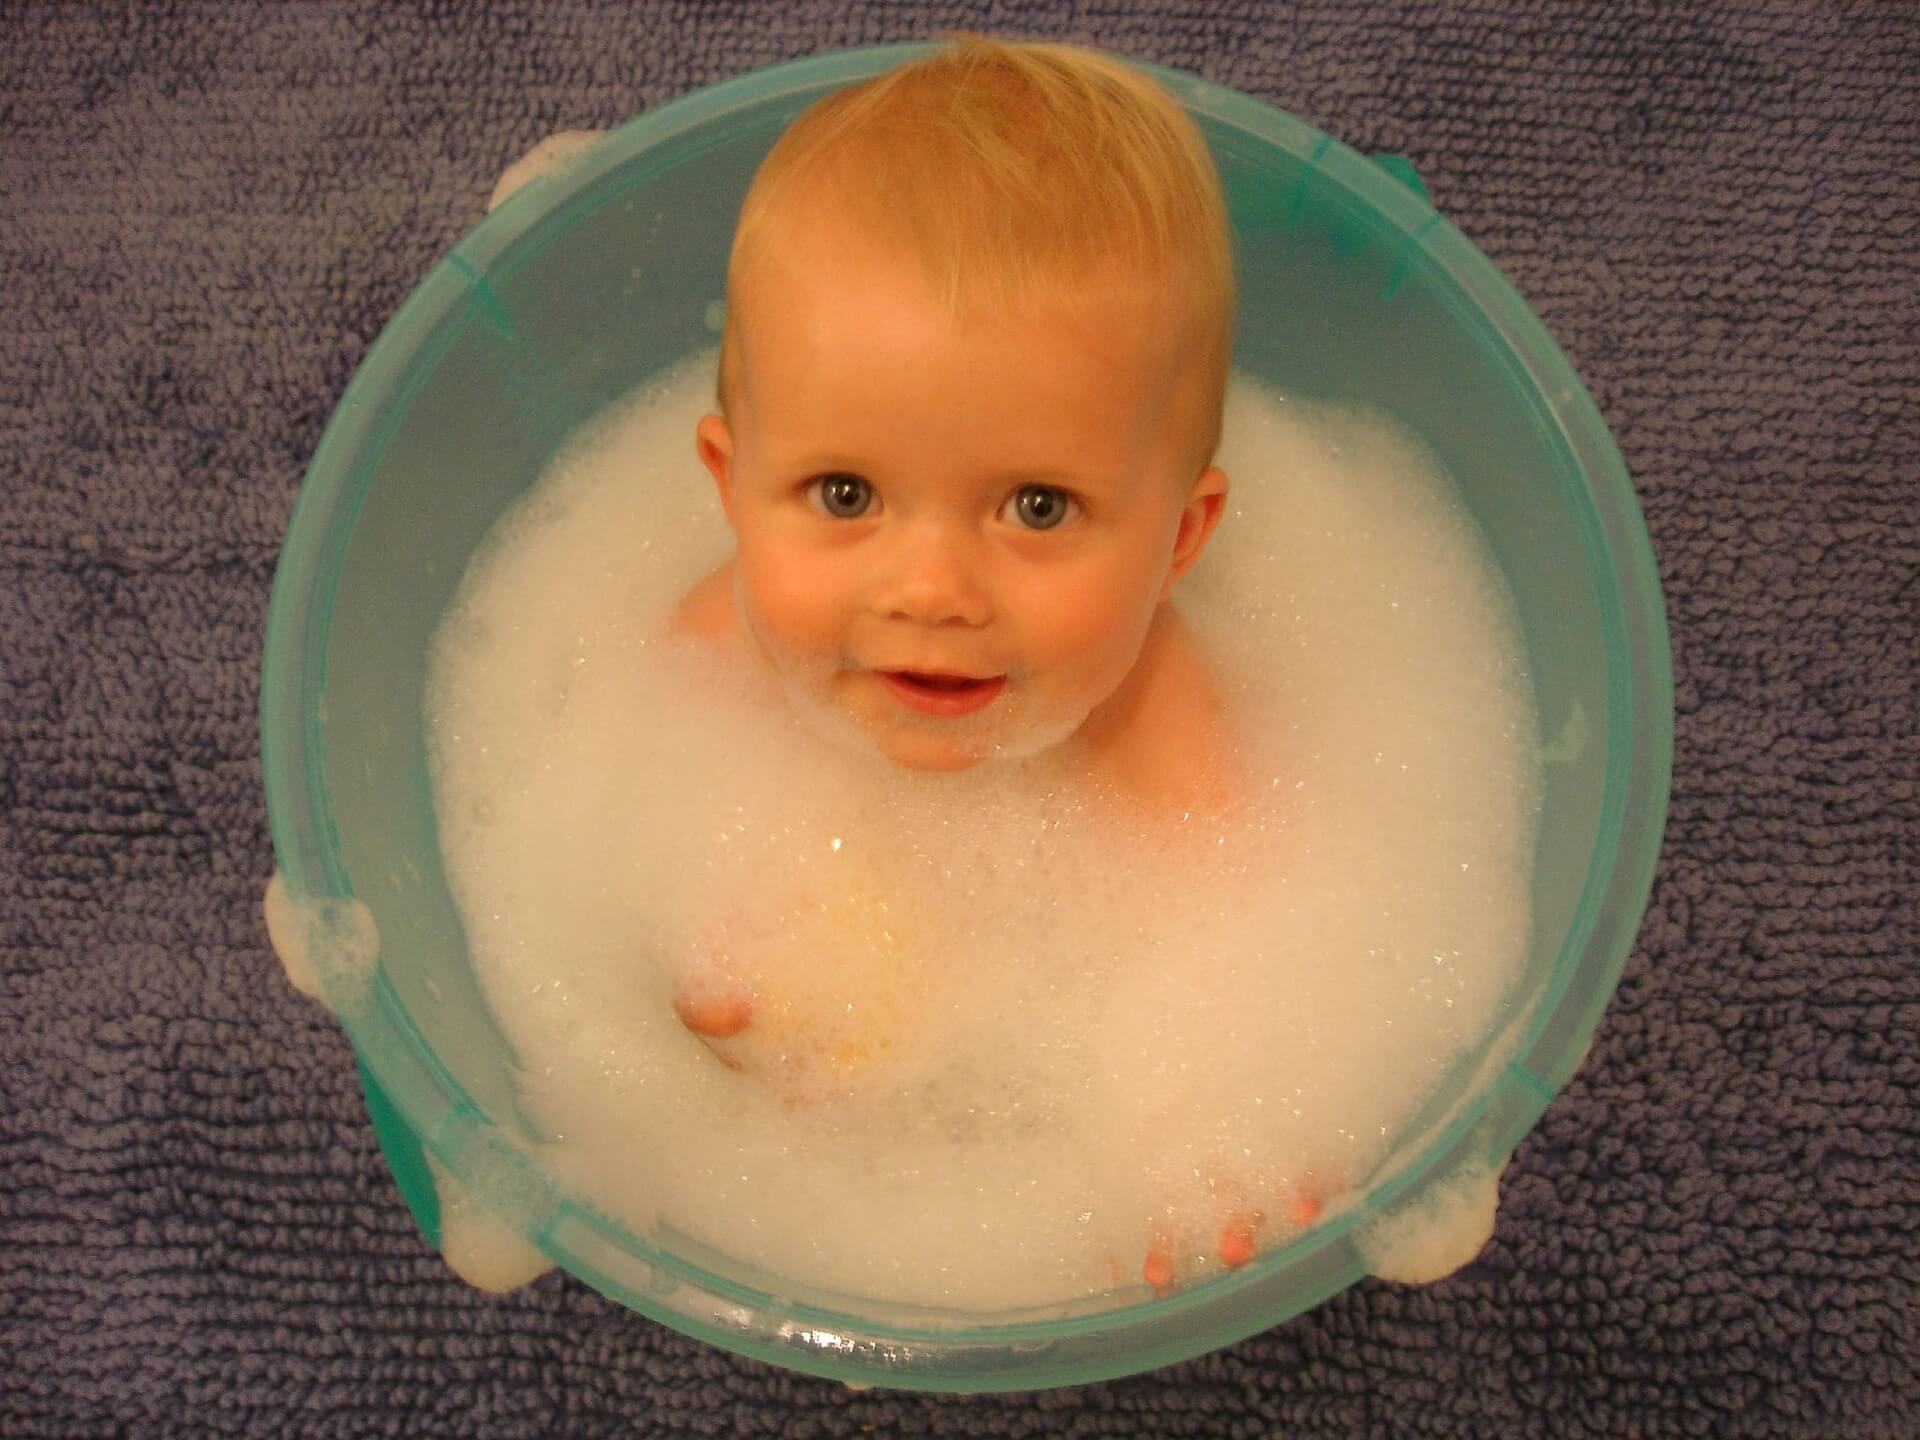 bebê tomando banho em uma bacia de espuma